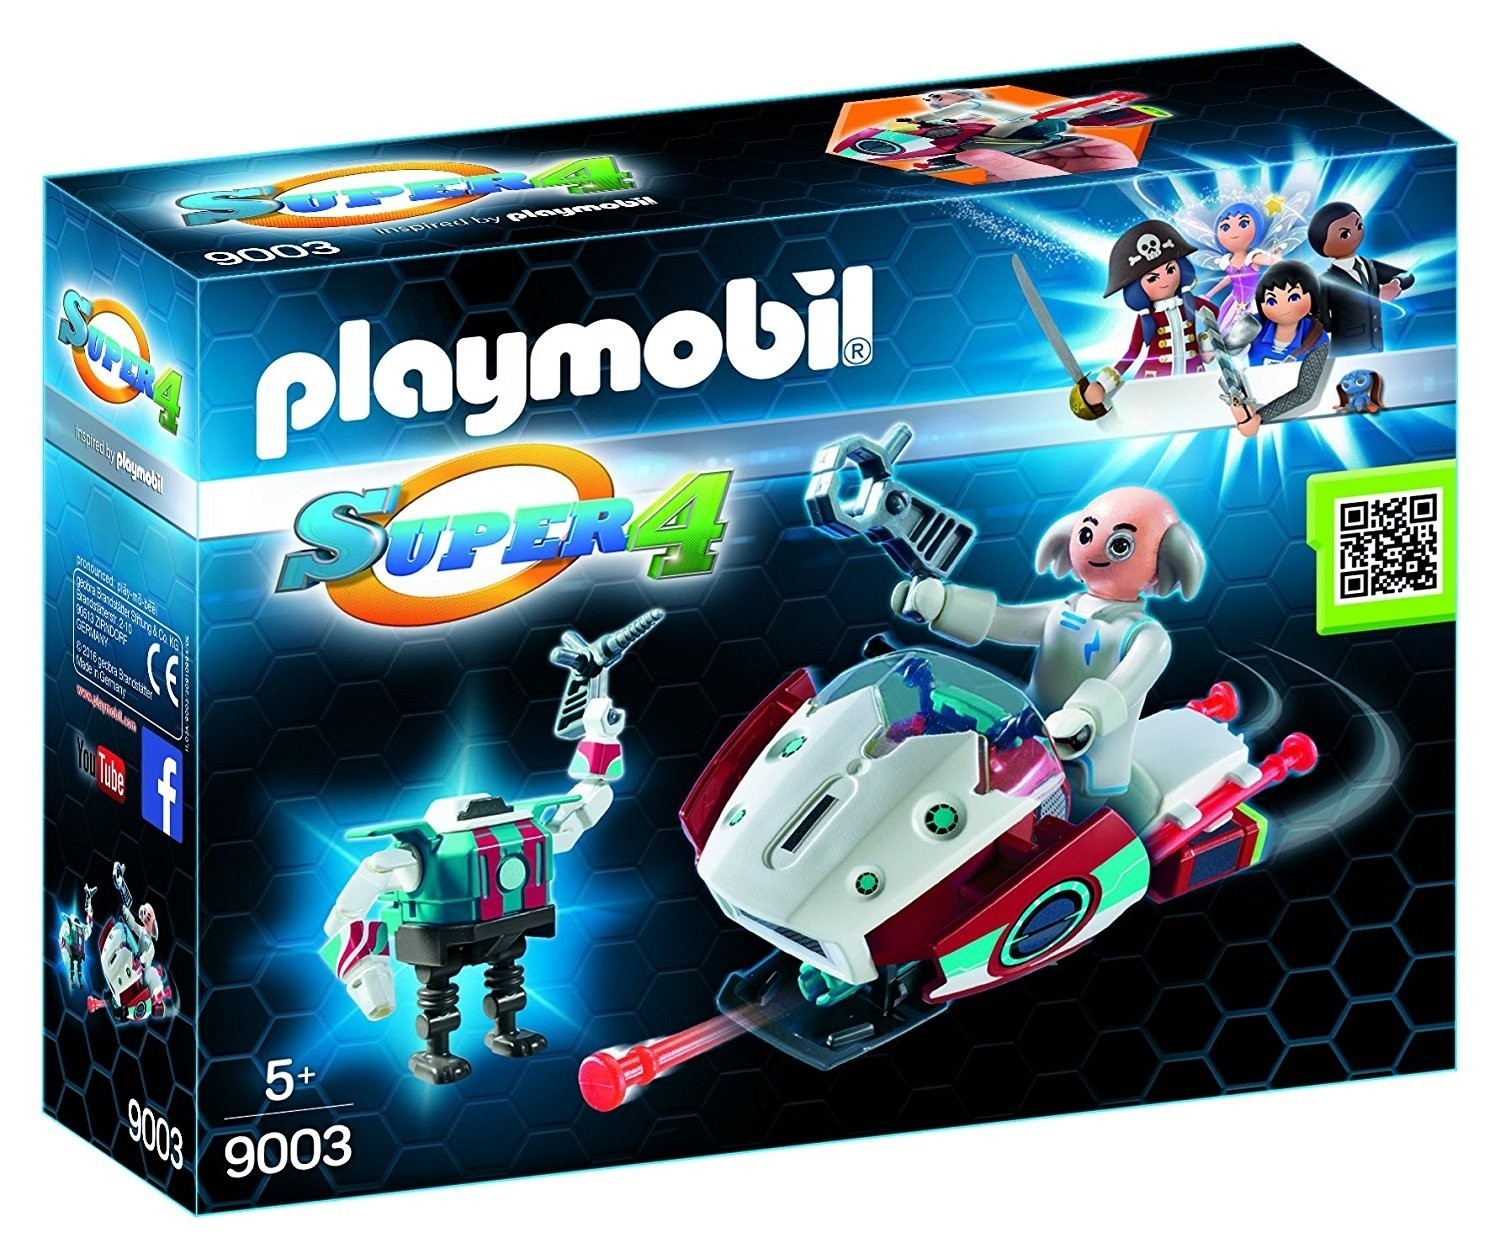 Playmobil Super 4 n°9003, Playmobil